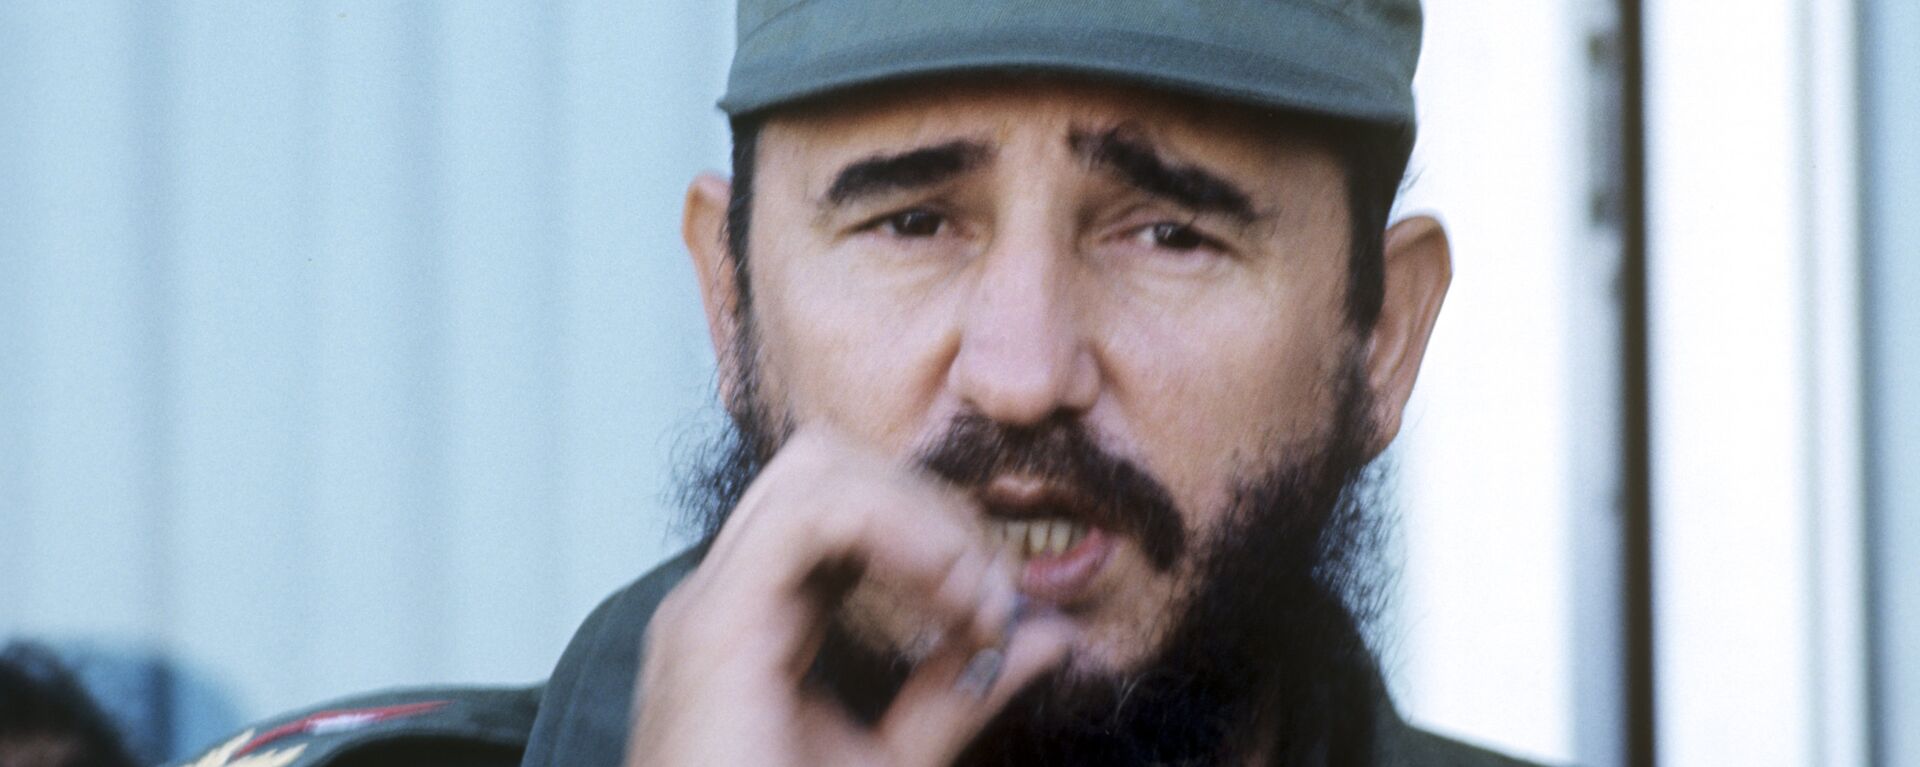 Fidel Castro, el líder de la Revolución cubana - Sputnik Mundo, 1920, 13.08.2021